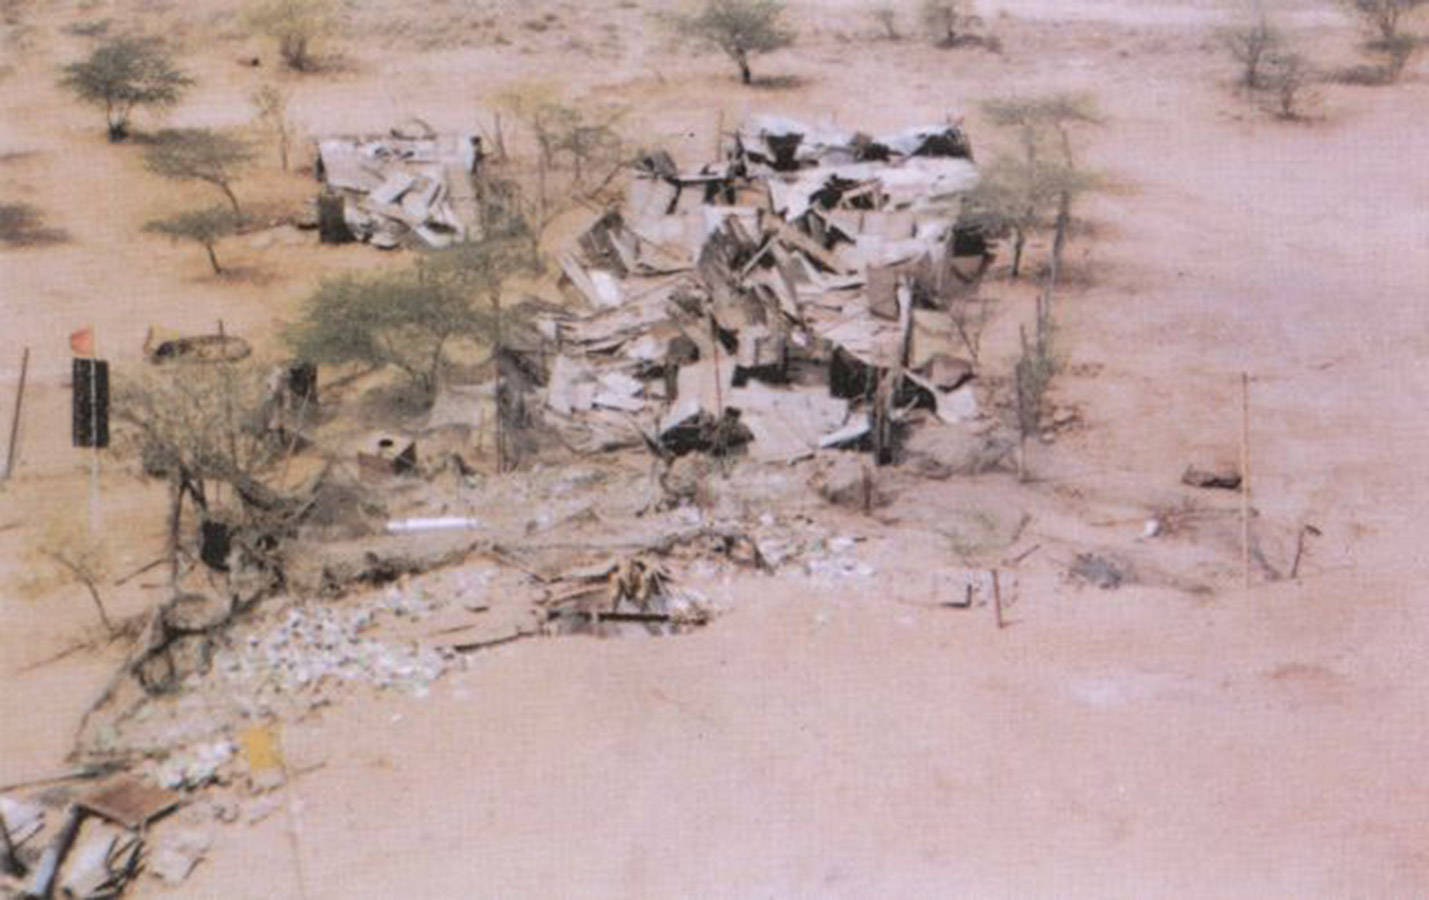 На фото: разрушения после испытания индийской термоядерной бомбы Shakti.

11 и 13 мая 1998 года Индия провела два подземных ядерных испытания под кодовым названием &laquo;Шакти-98&raquo; (&laquo;Могущество&raquo;) на своем подземном испытательном полигоне Покхран. В отличие от первого испытания 1974 года, на этот раз ее руководство не заявляло о том, что эти взрывы &laquo;мирные&raquo;. Напротив, власти прямо сказали об их военной природе. Цель таких взрывов&nbsp;&mdash; демонстрация своей военной мощи соседнему Пакистану, с которым Дели находится в состоянии конфликта с момента обретения независимости в 1947 году